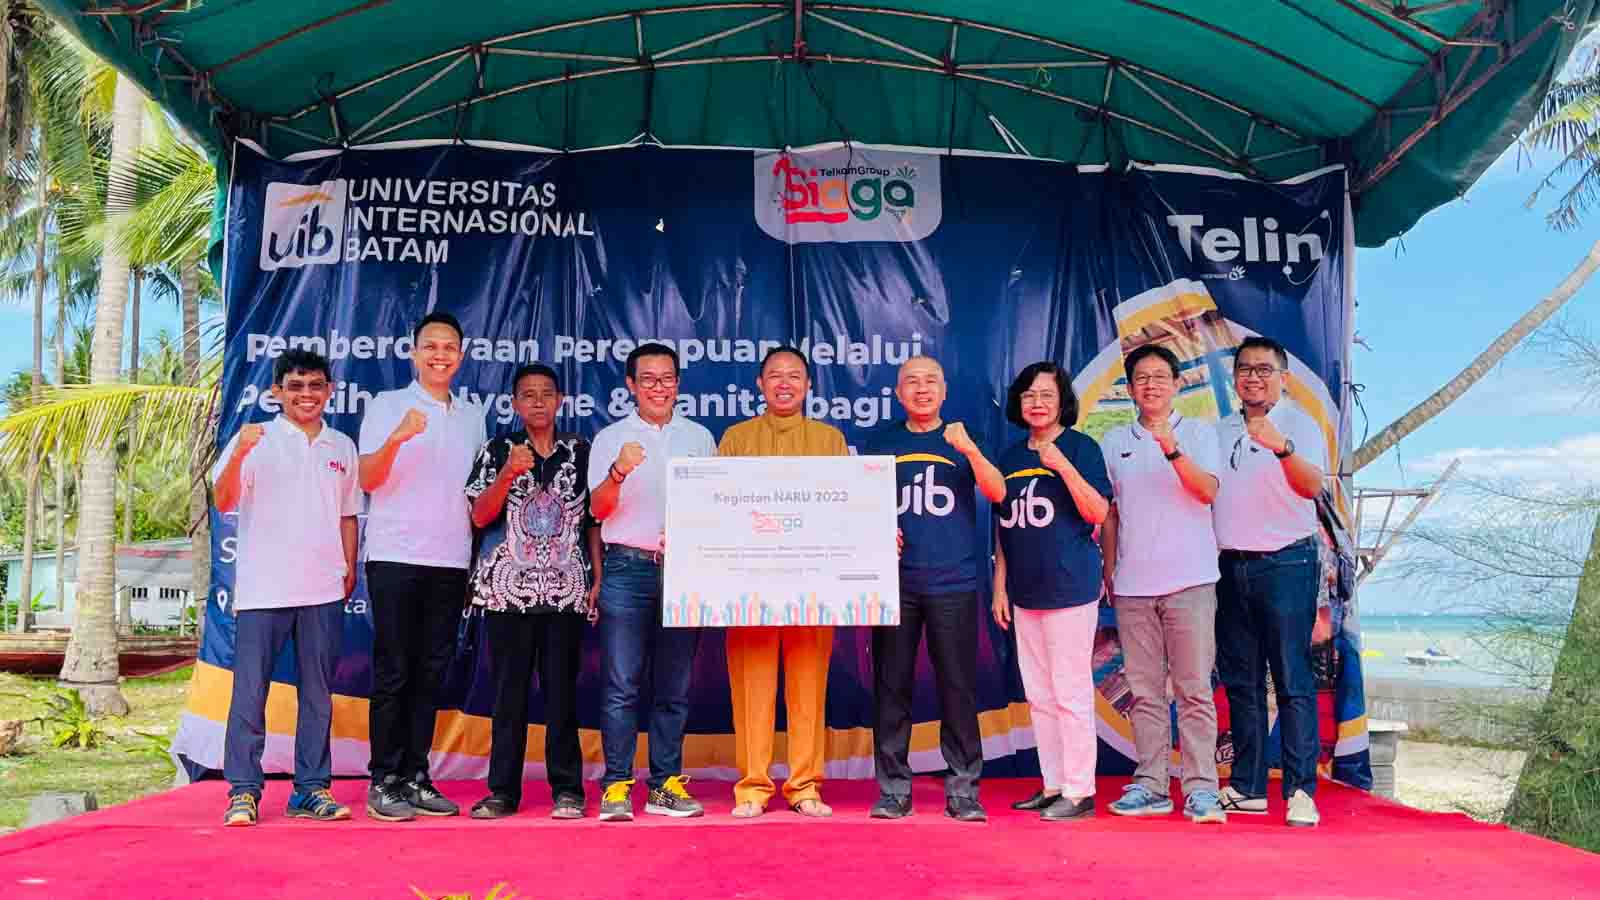 Kolaborasi Telin dan UIB Berdayakan Perempuan di Kampung Tua Nongsa, Batam